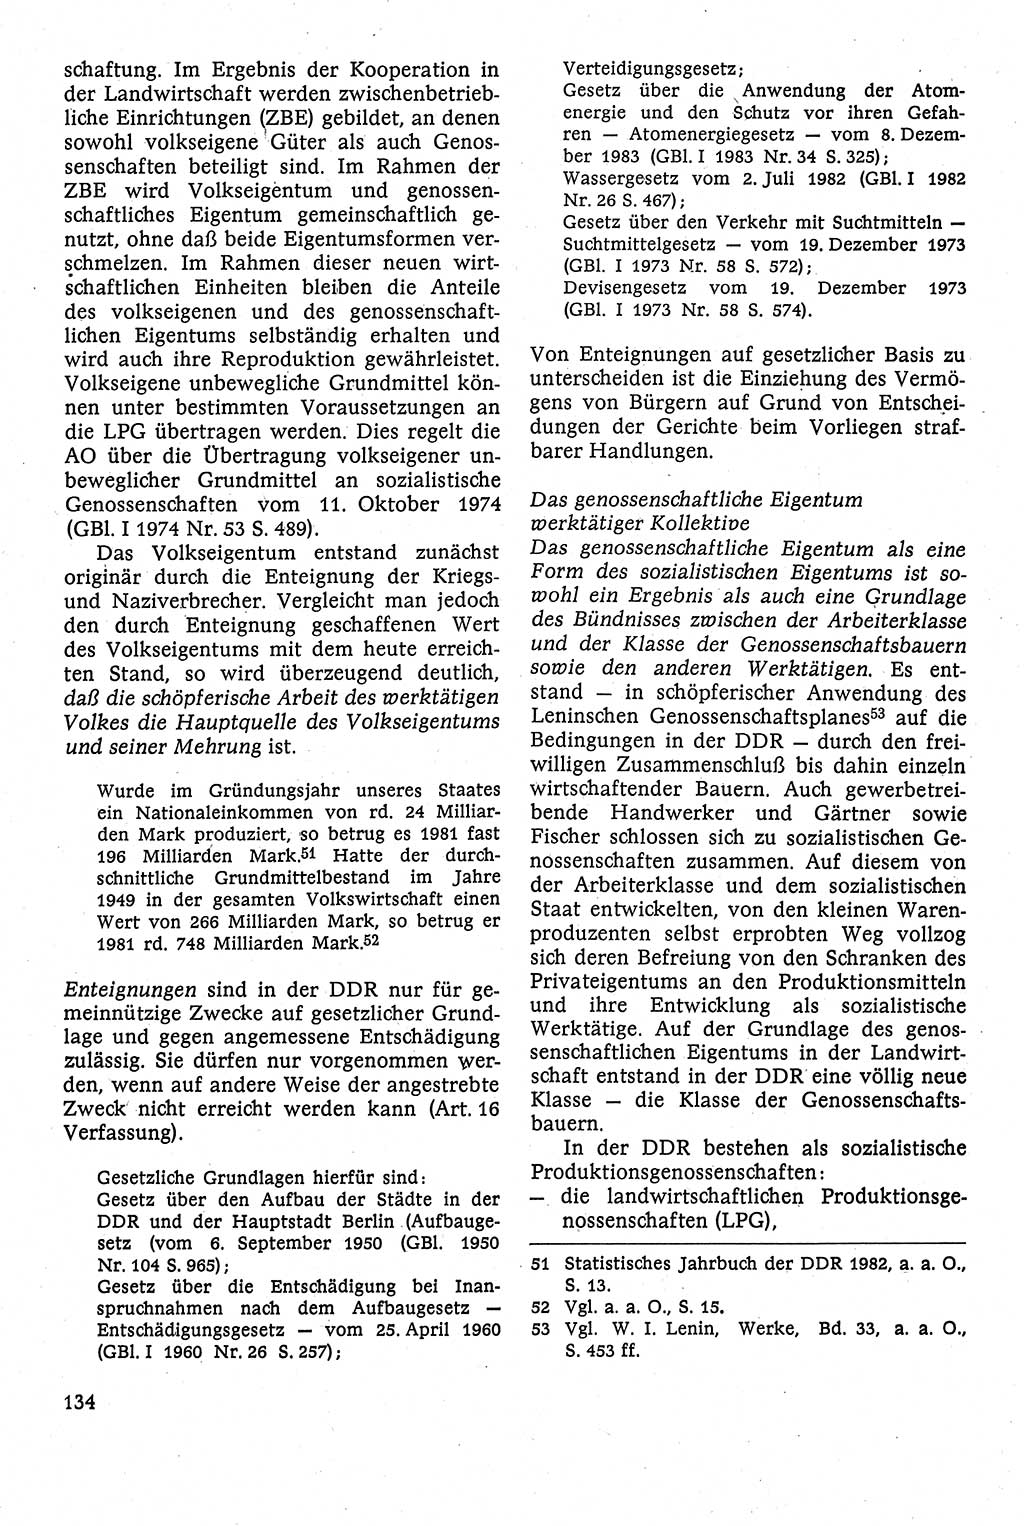 Staatsrecht der DDR [Deutsche Demokratische Republik (DDR)], Lehrbuch 1984, Seite 134 (St.-R. DDR Lb. 1984, S. 134)